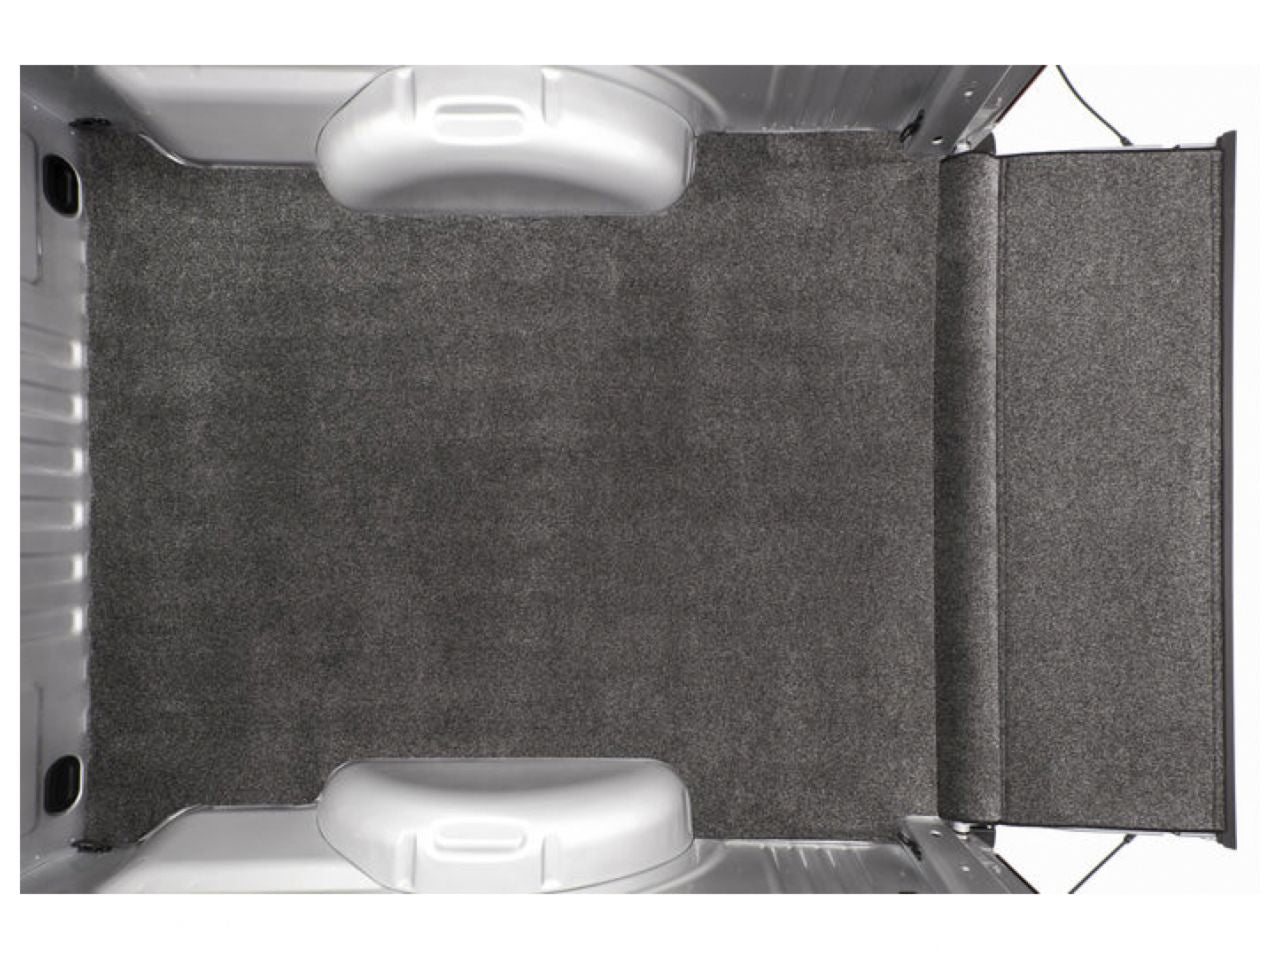 Bedrug XLT Bedmat For Spray-In Or No Bed Liner 02+ Dodge Ram 8' Bed